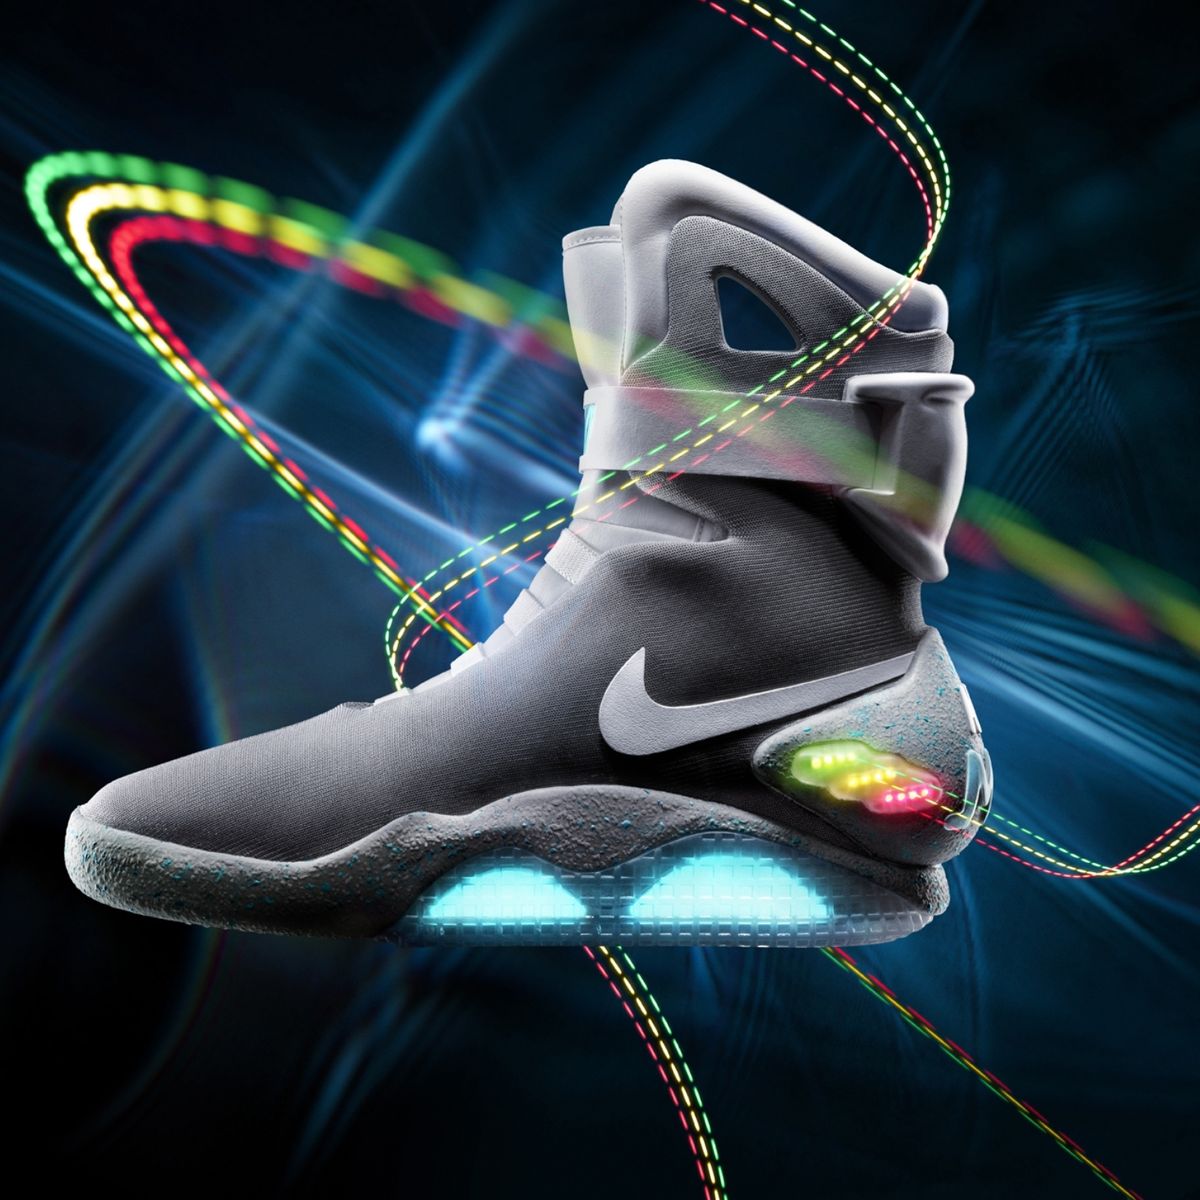 Te Nike planea lanzarlas en 2015 ('robocordones' incluidos)